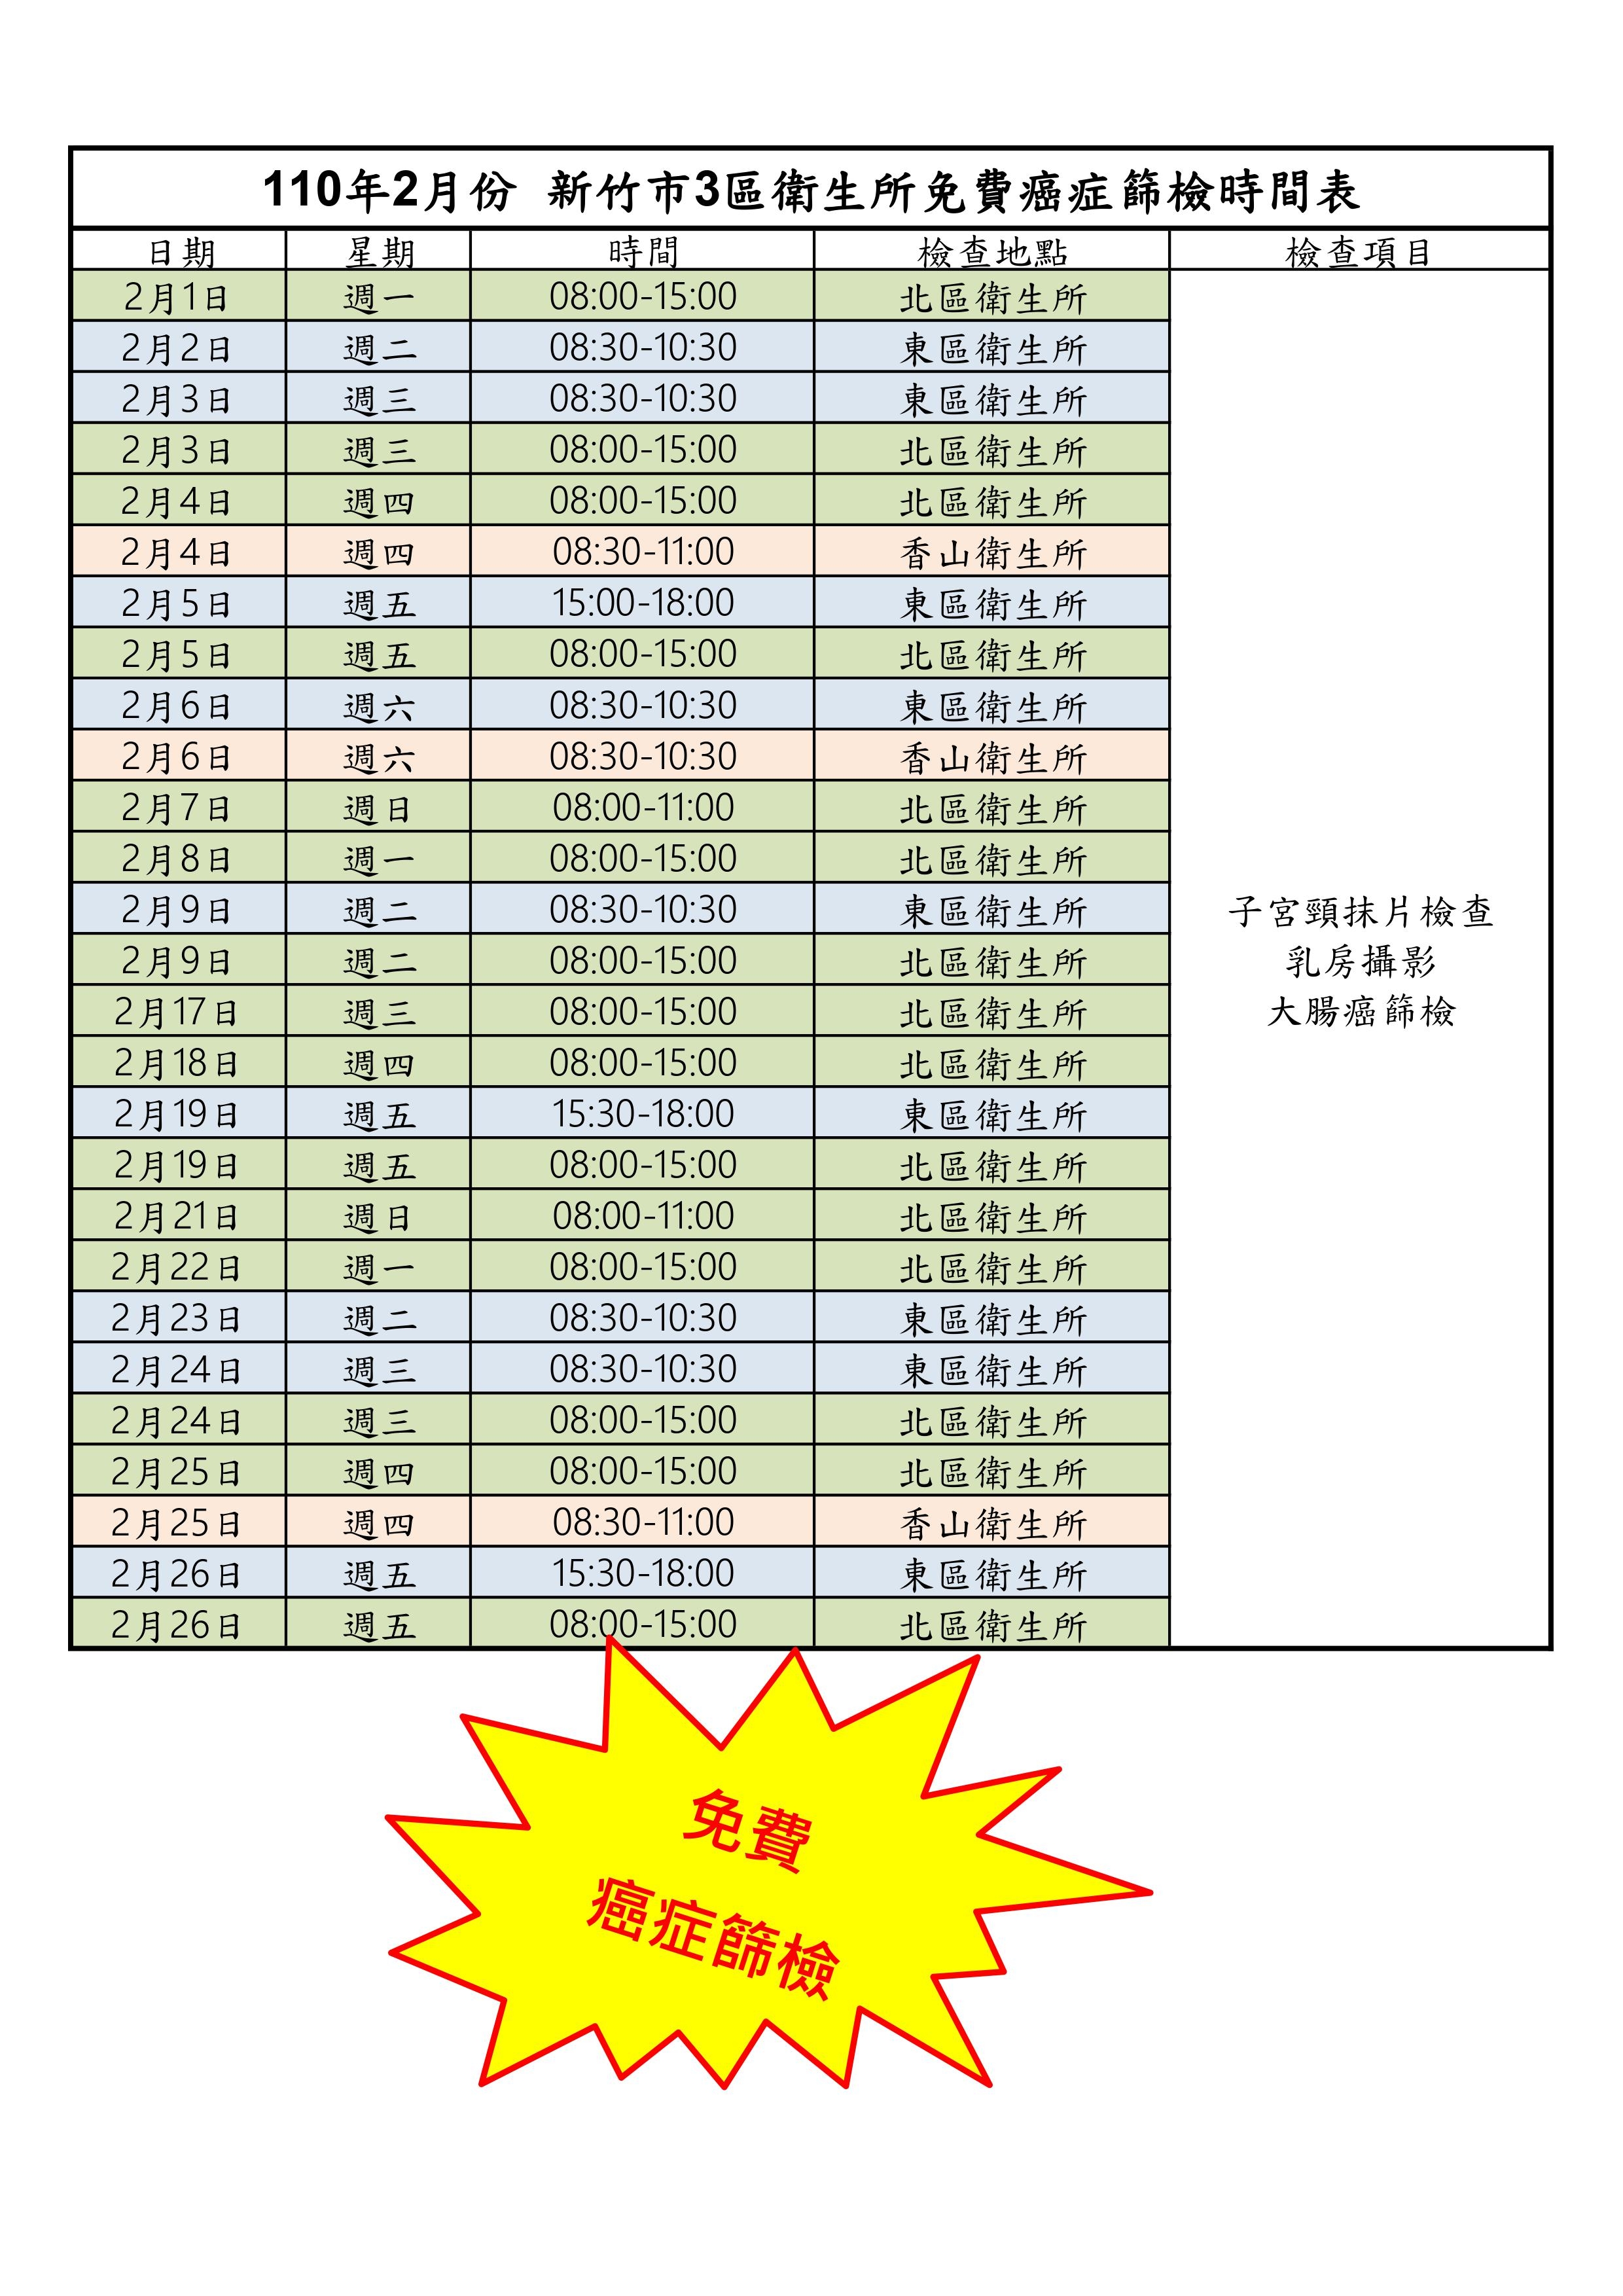 2月份新竹市3區衛生所免費癌症篩檢時間表